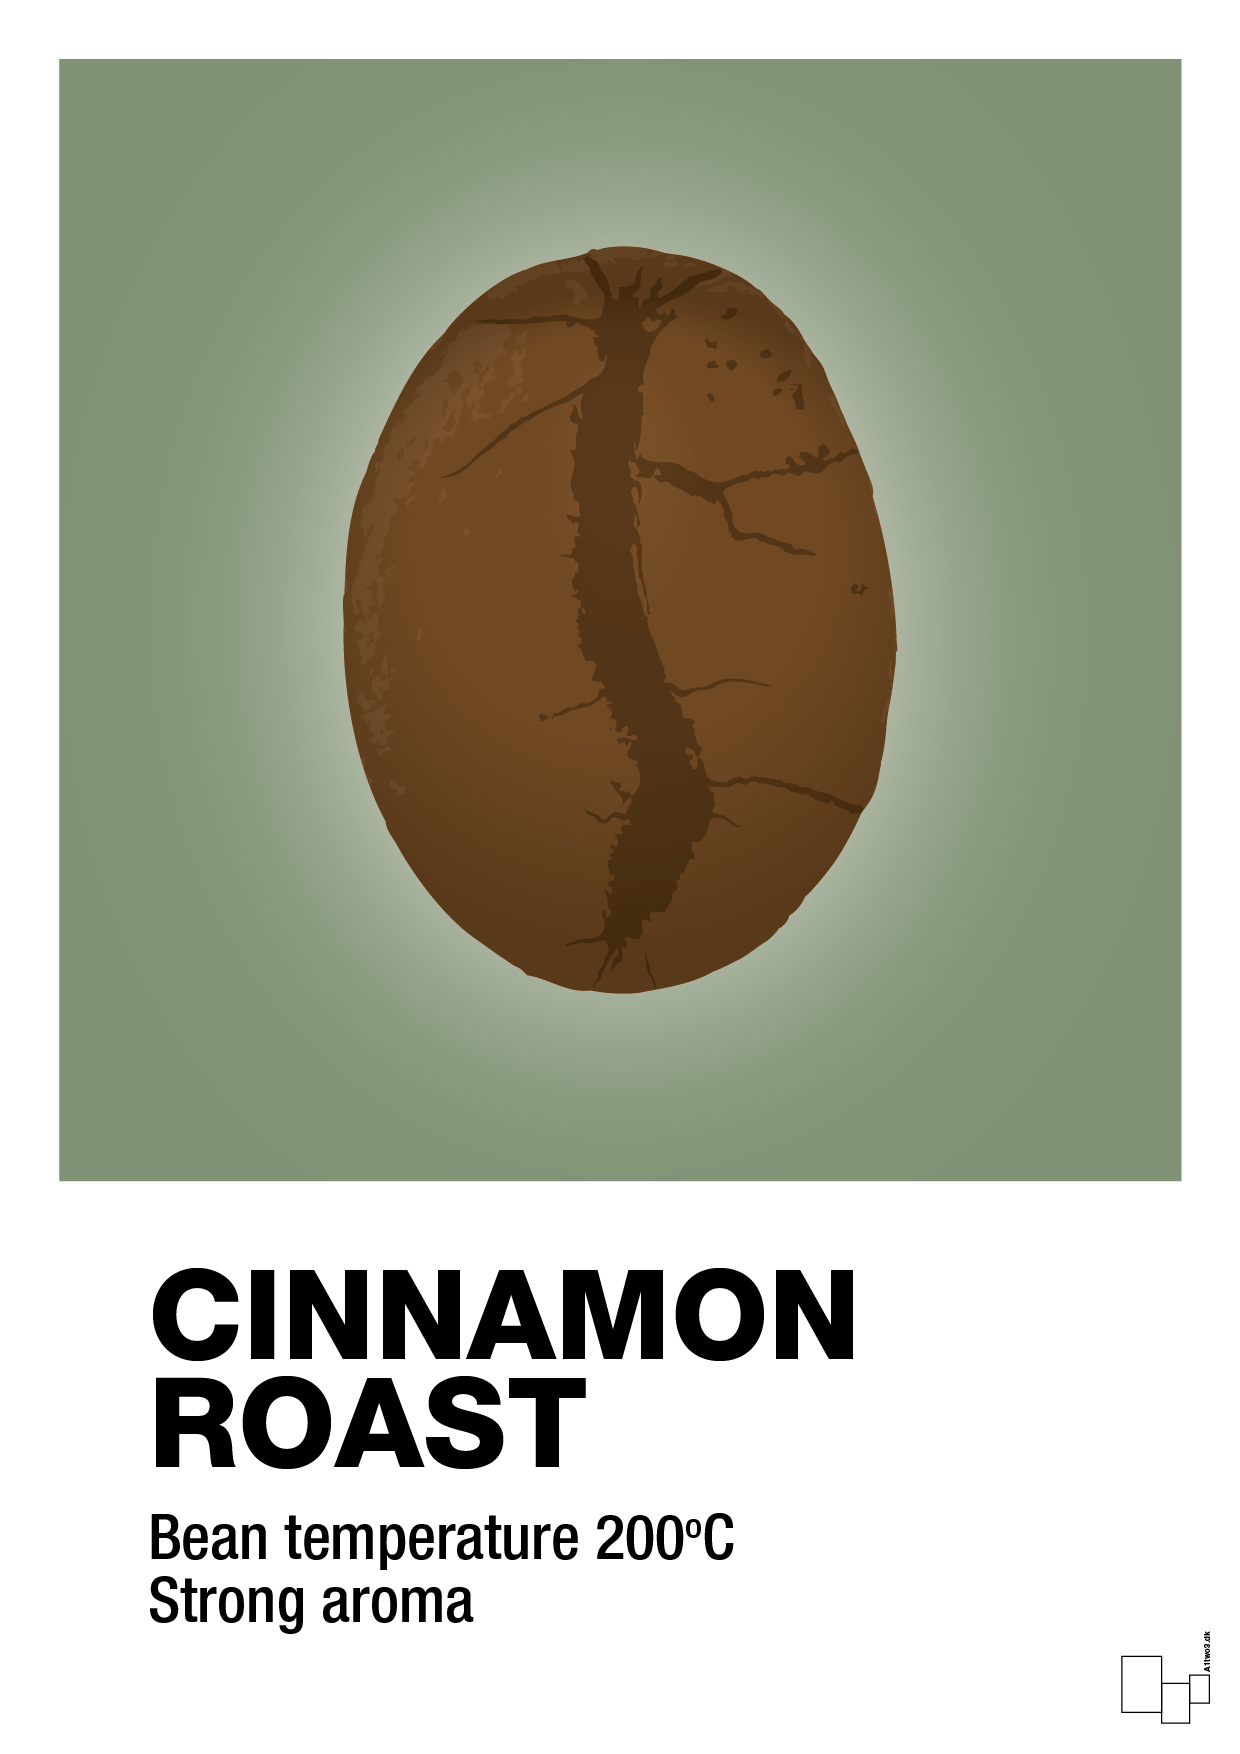 cinnamom roast - Plakat med Mad & Drikke i Jade